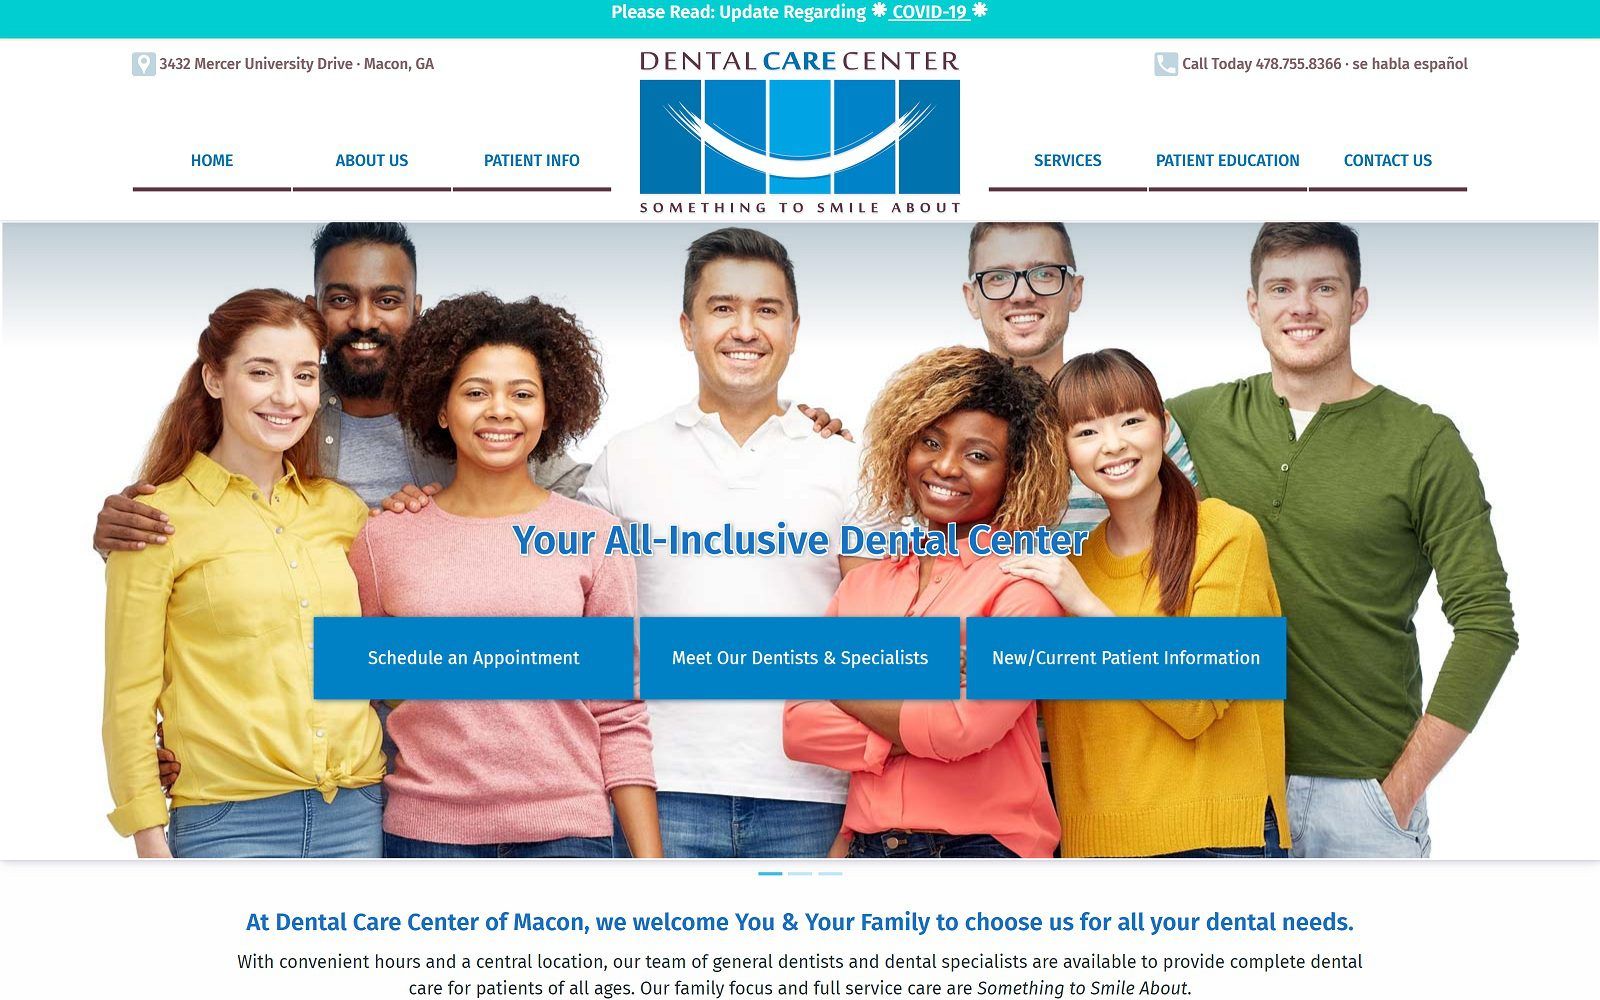 The screenshot of dental care center dentalcarecentermacon. Com website